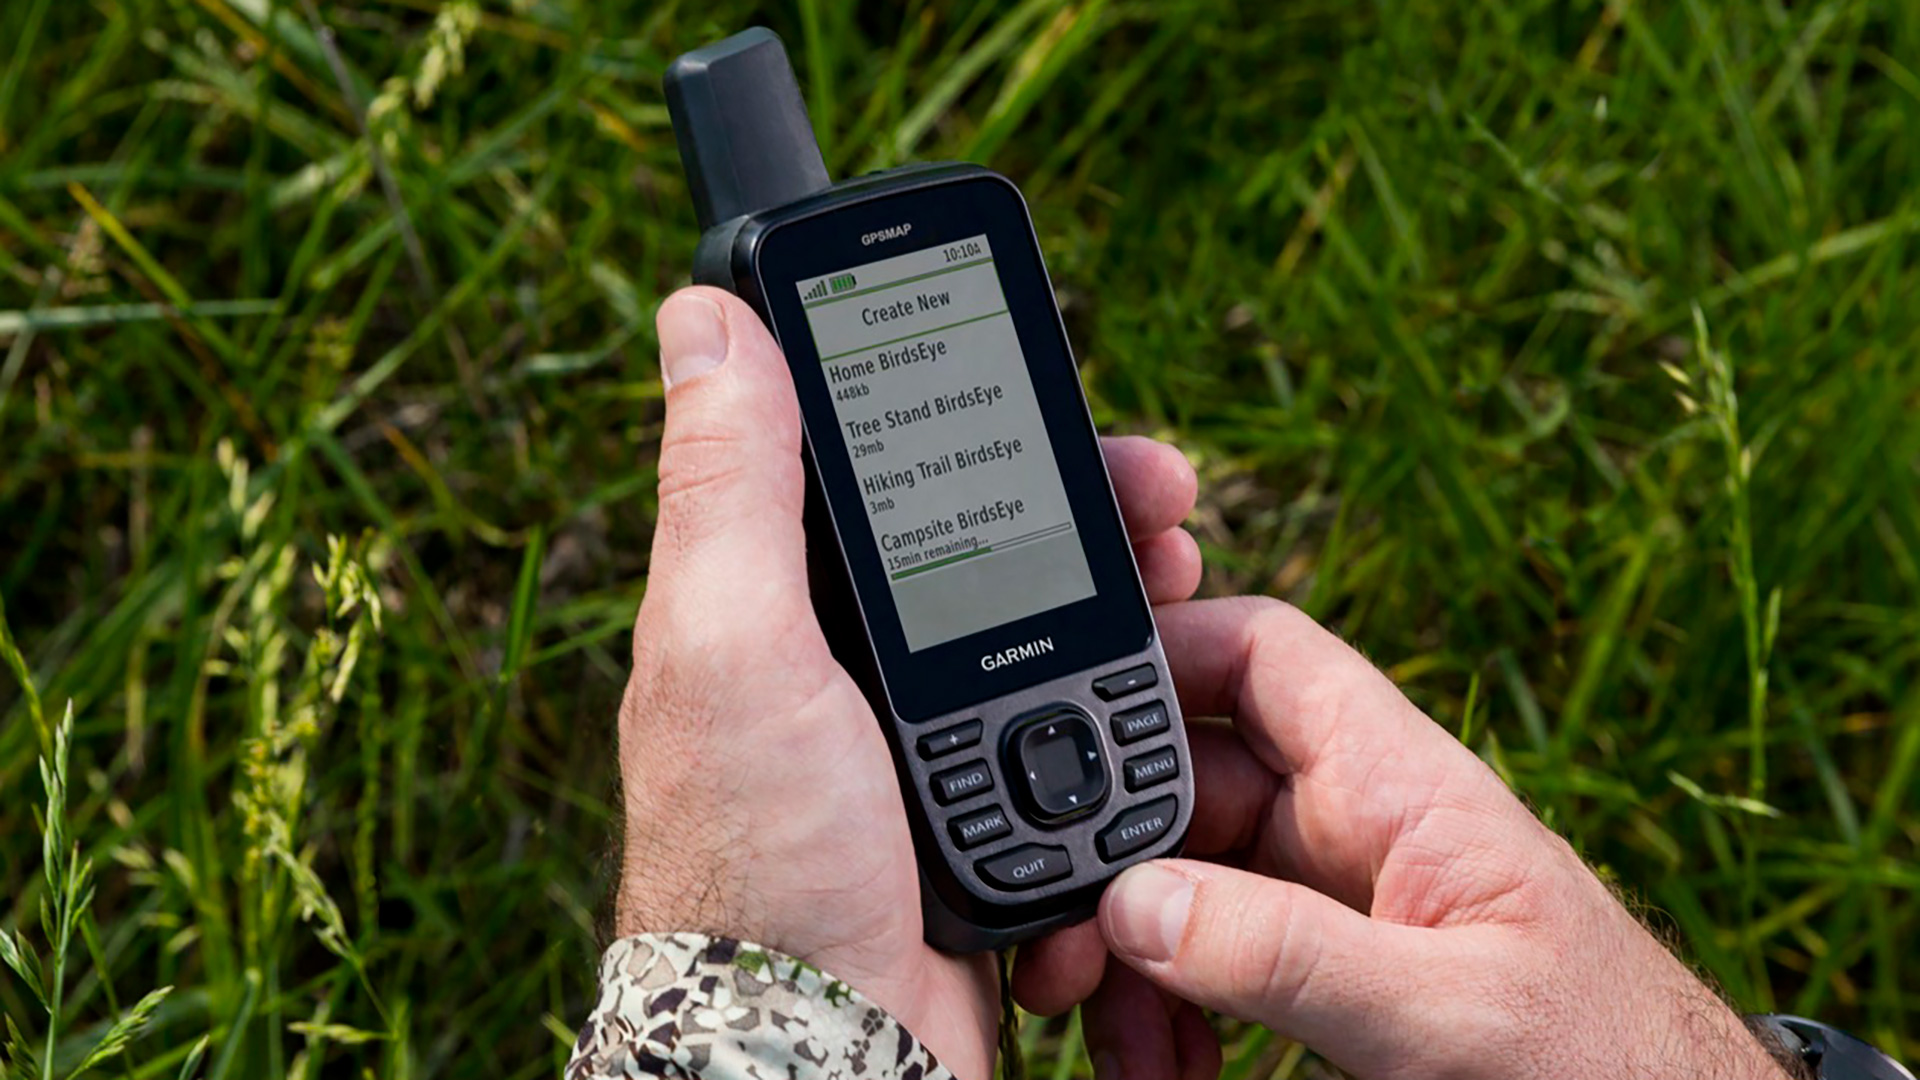 Garmin eTrex® SE  Handheld Hiking GPS